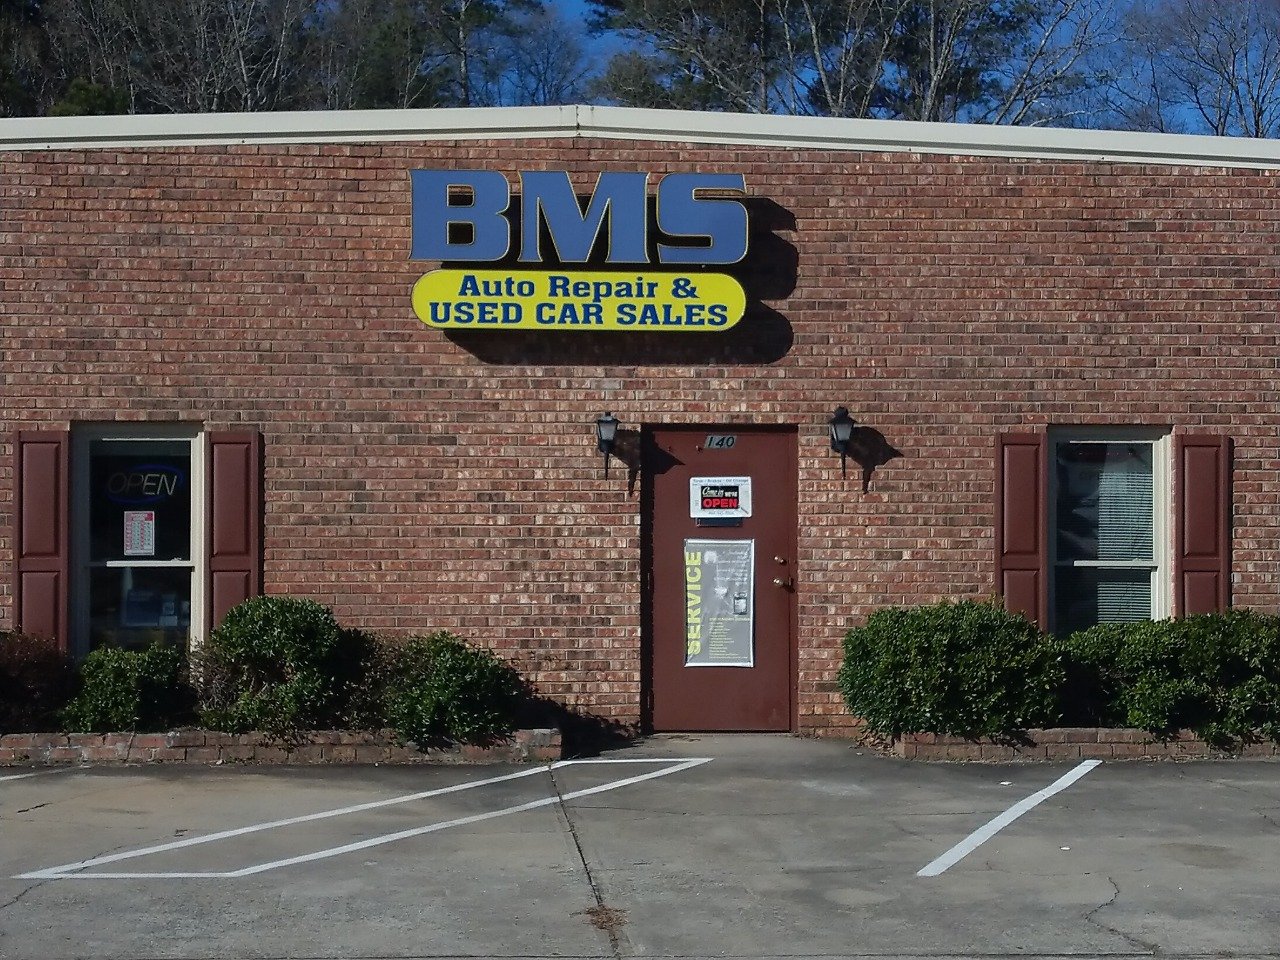 BMS Auto Repair & Used Car Sales